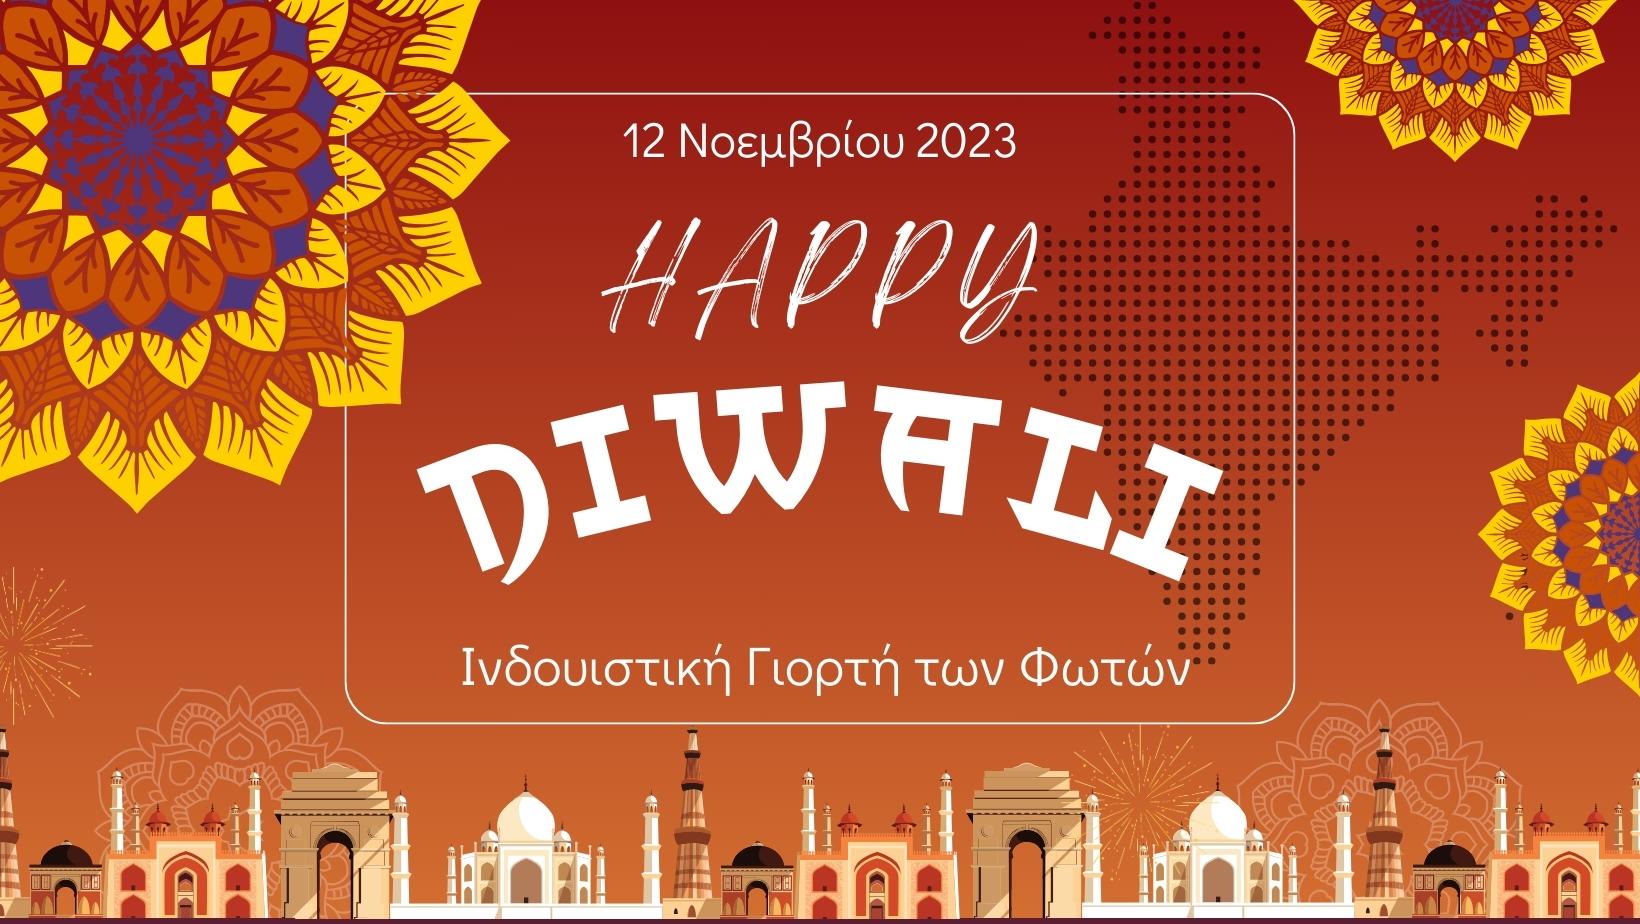 Diwali:  Ινδουιστική Γιορτή των Φωτών